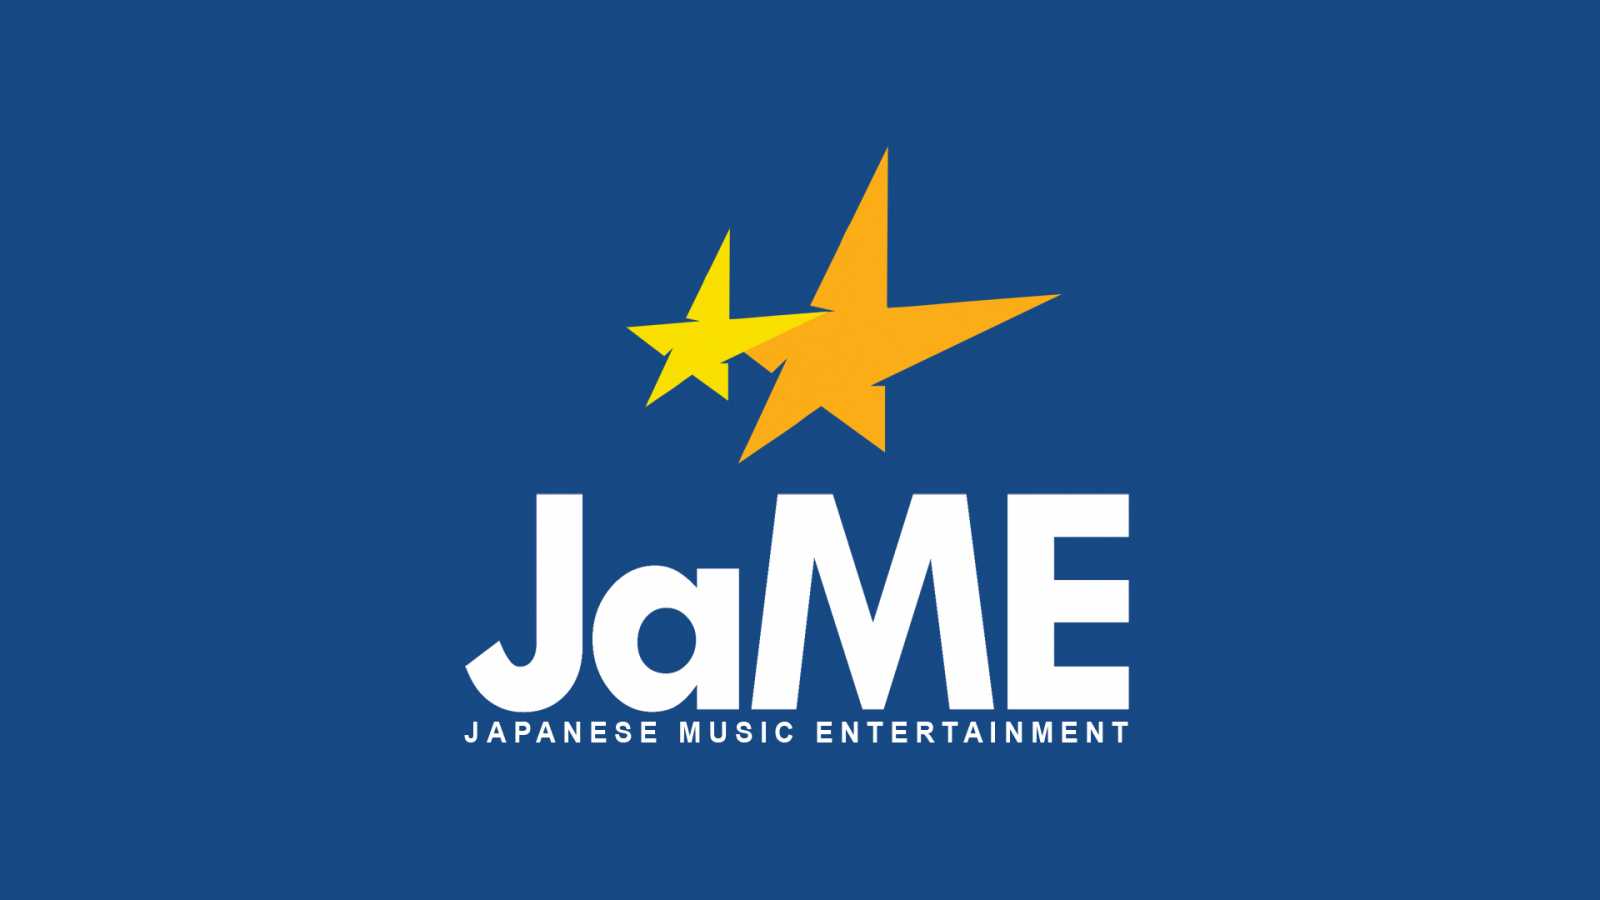 Cancelan conciertos y eventos en Japón por coronavirus © JaME. All rights reserved.